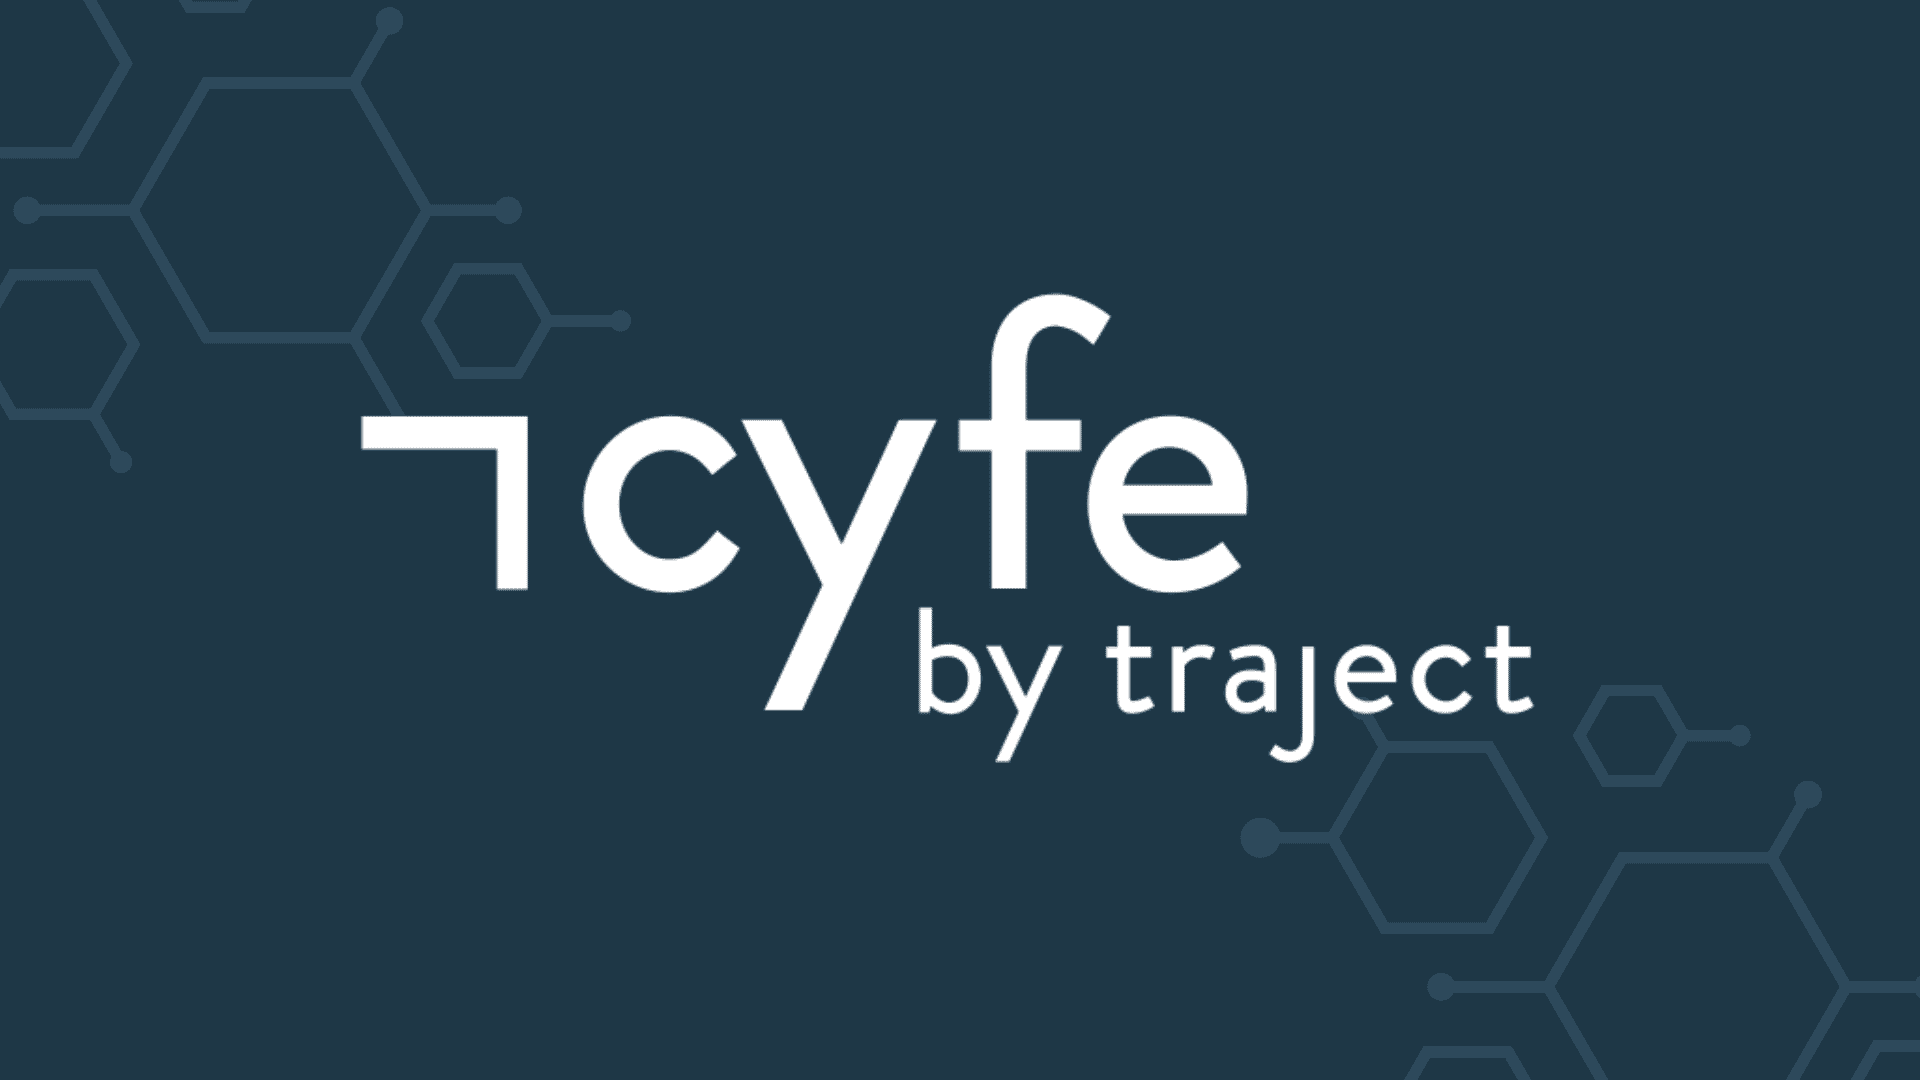 Cyfe Logo